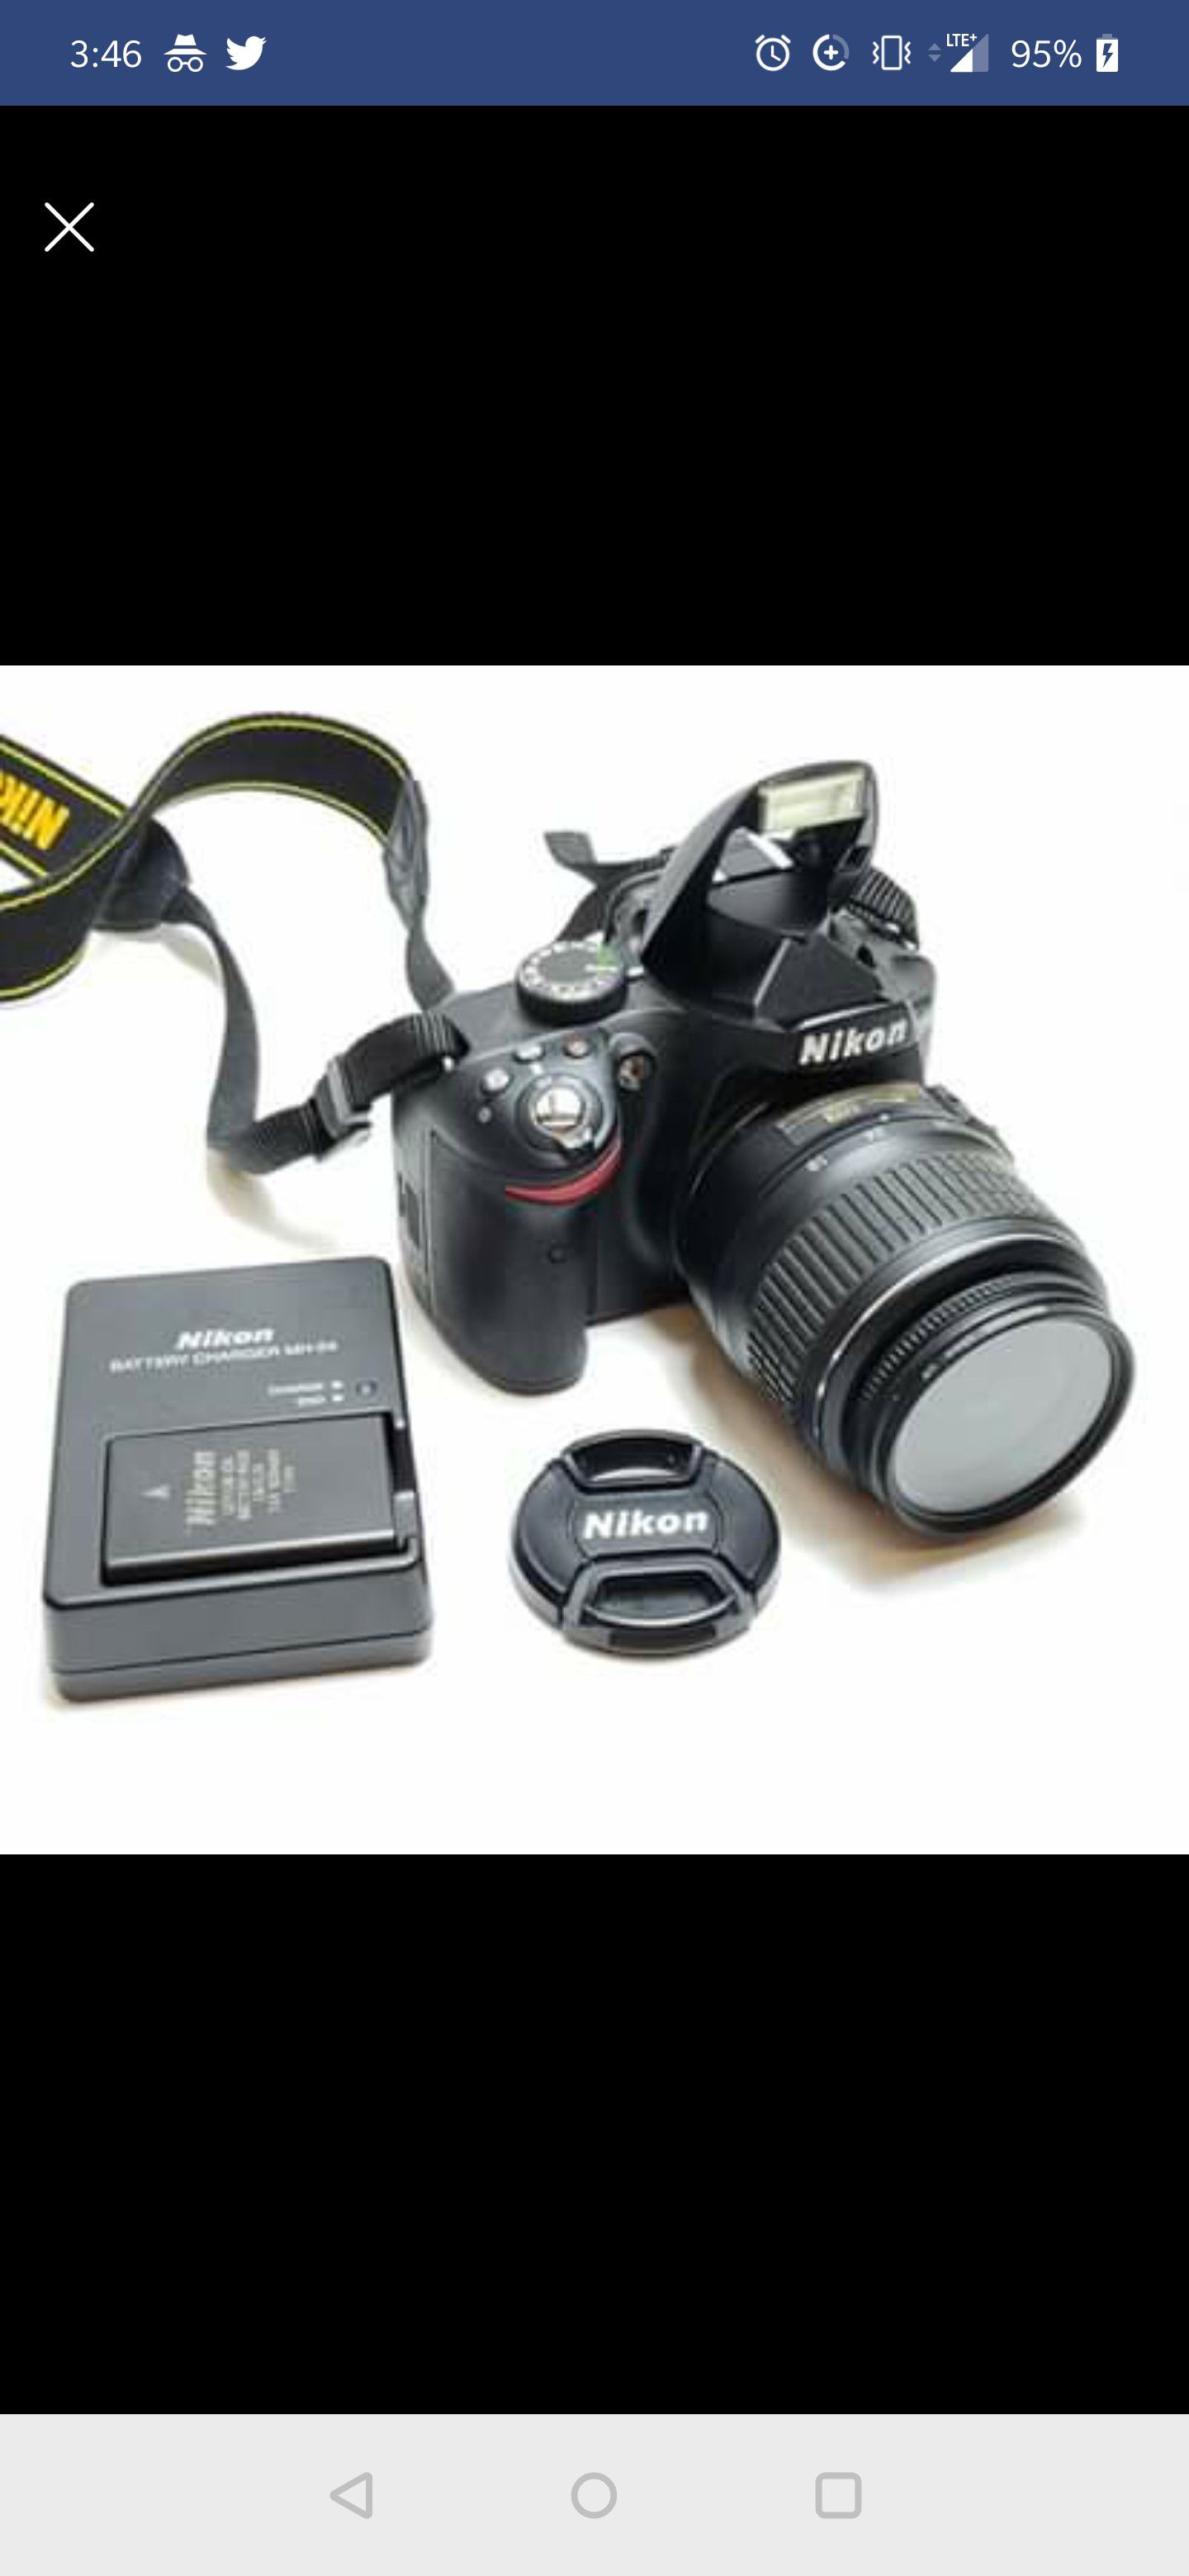 Nikon D3200 24.2MP Digital SLR Camera - Black Kit w/ DX 18-55mm